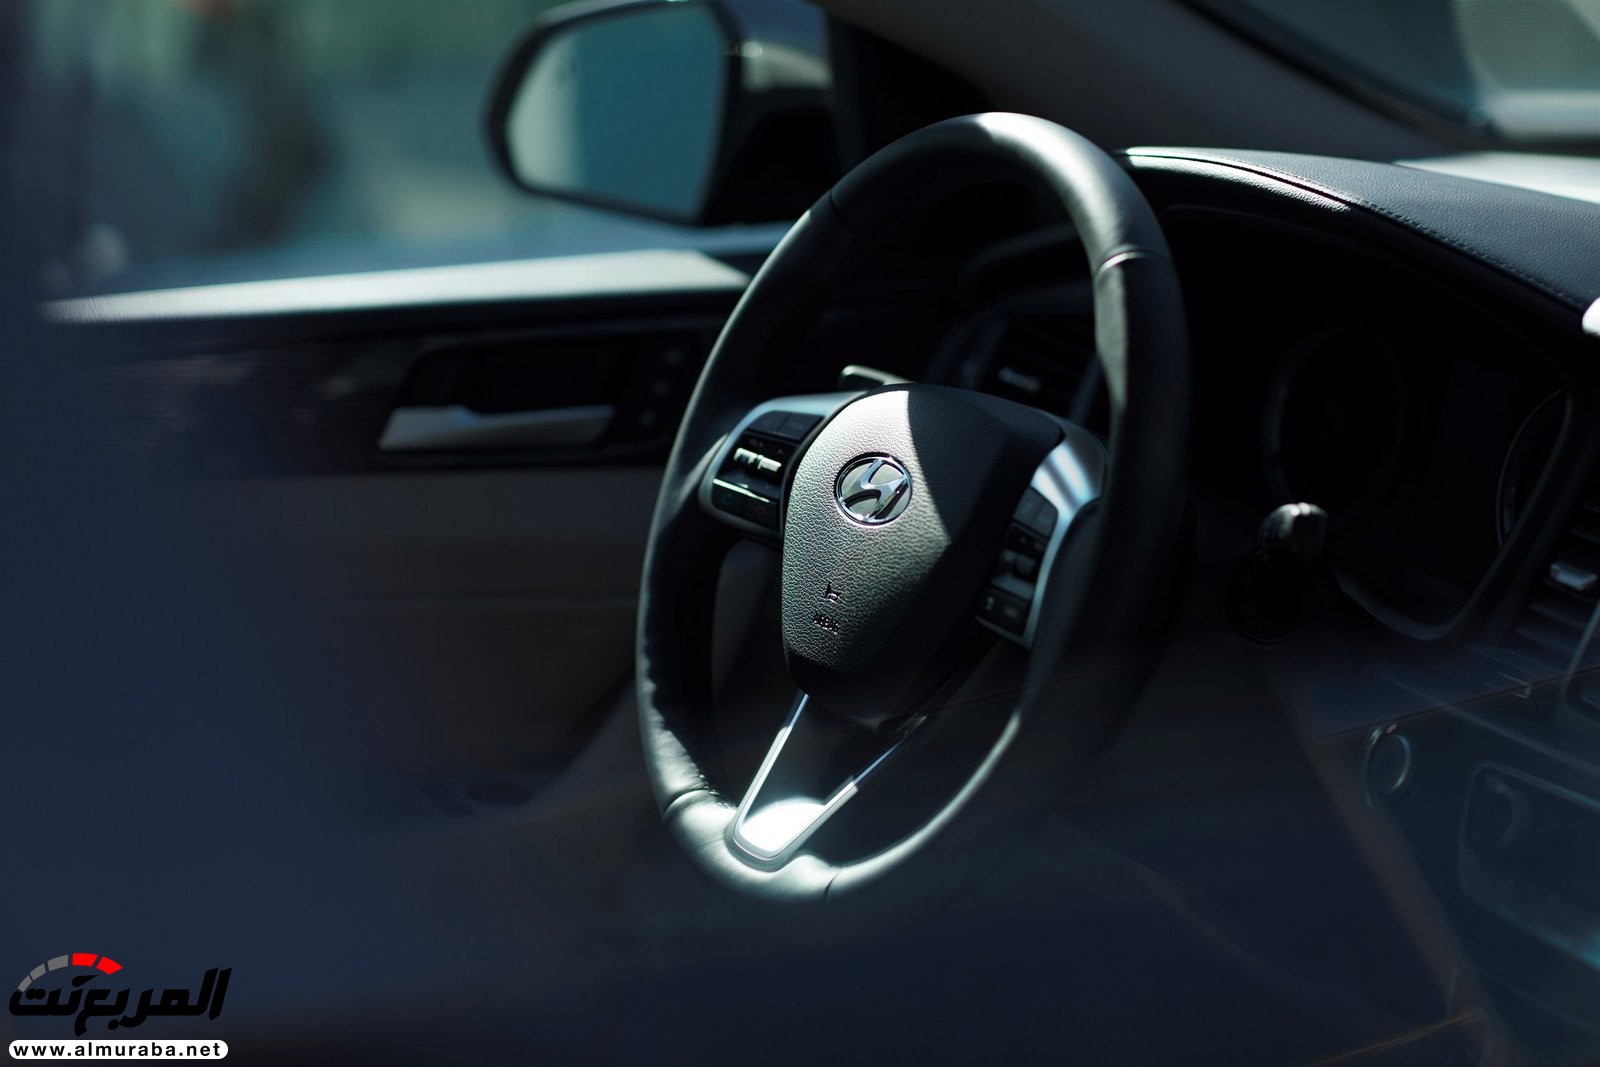 هيونداي سوناتا 2018 المحدثة تحصل على تحديثات خارجية وداخلية "صور وفيديو واسعار" Hyundai Sonata 161